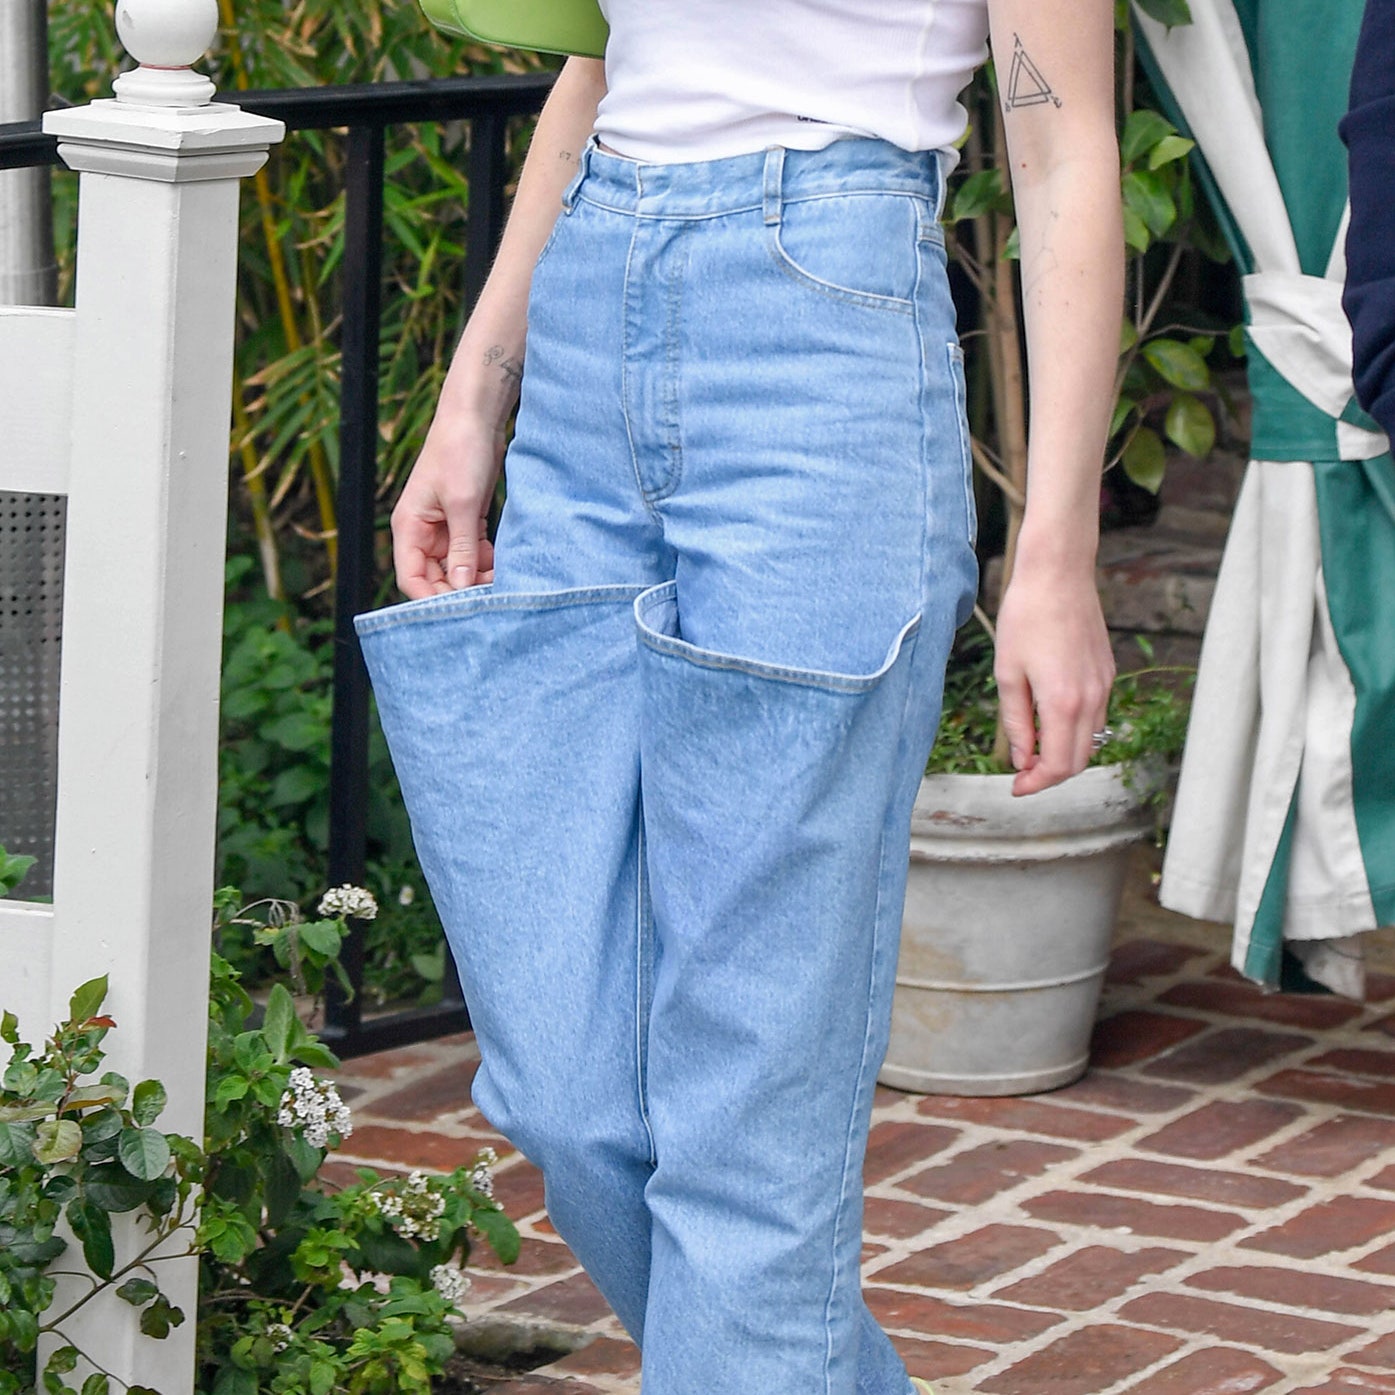 Не бойтесь носить необычные джинсы, как это делает Софи Тернер